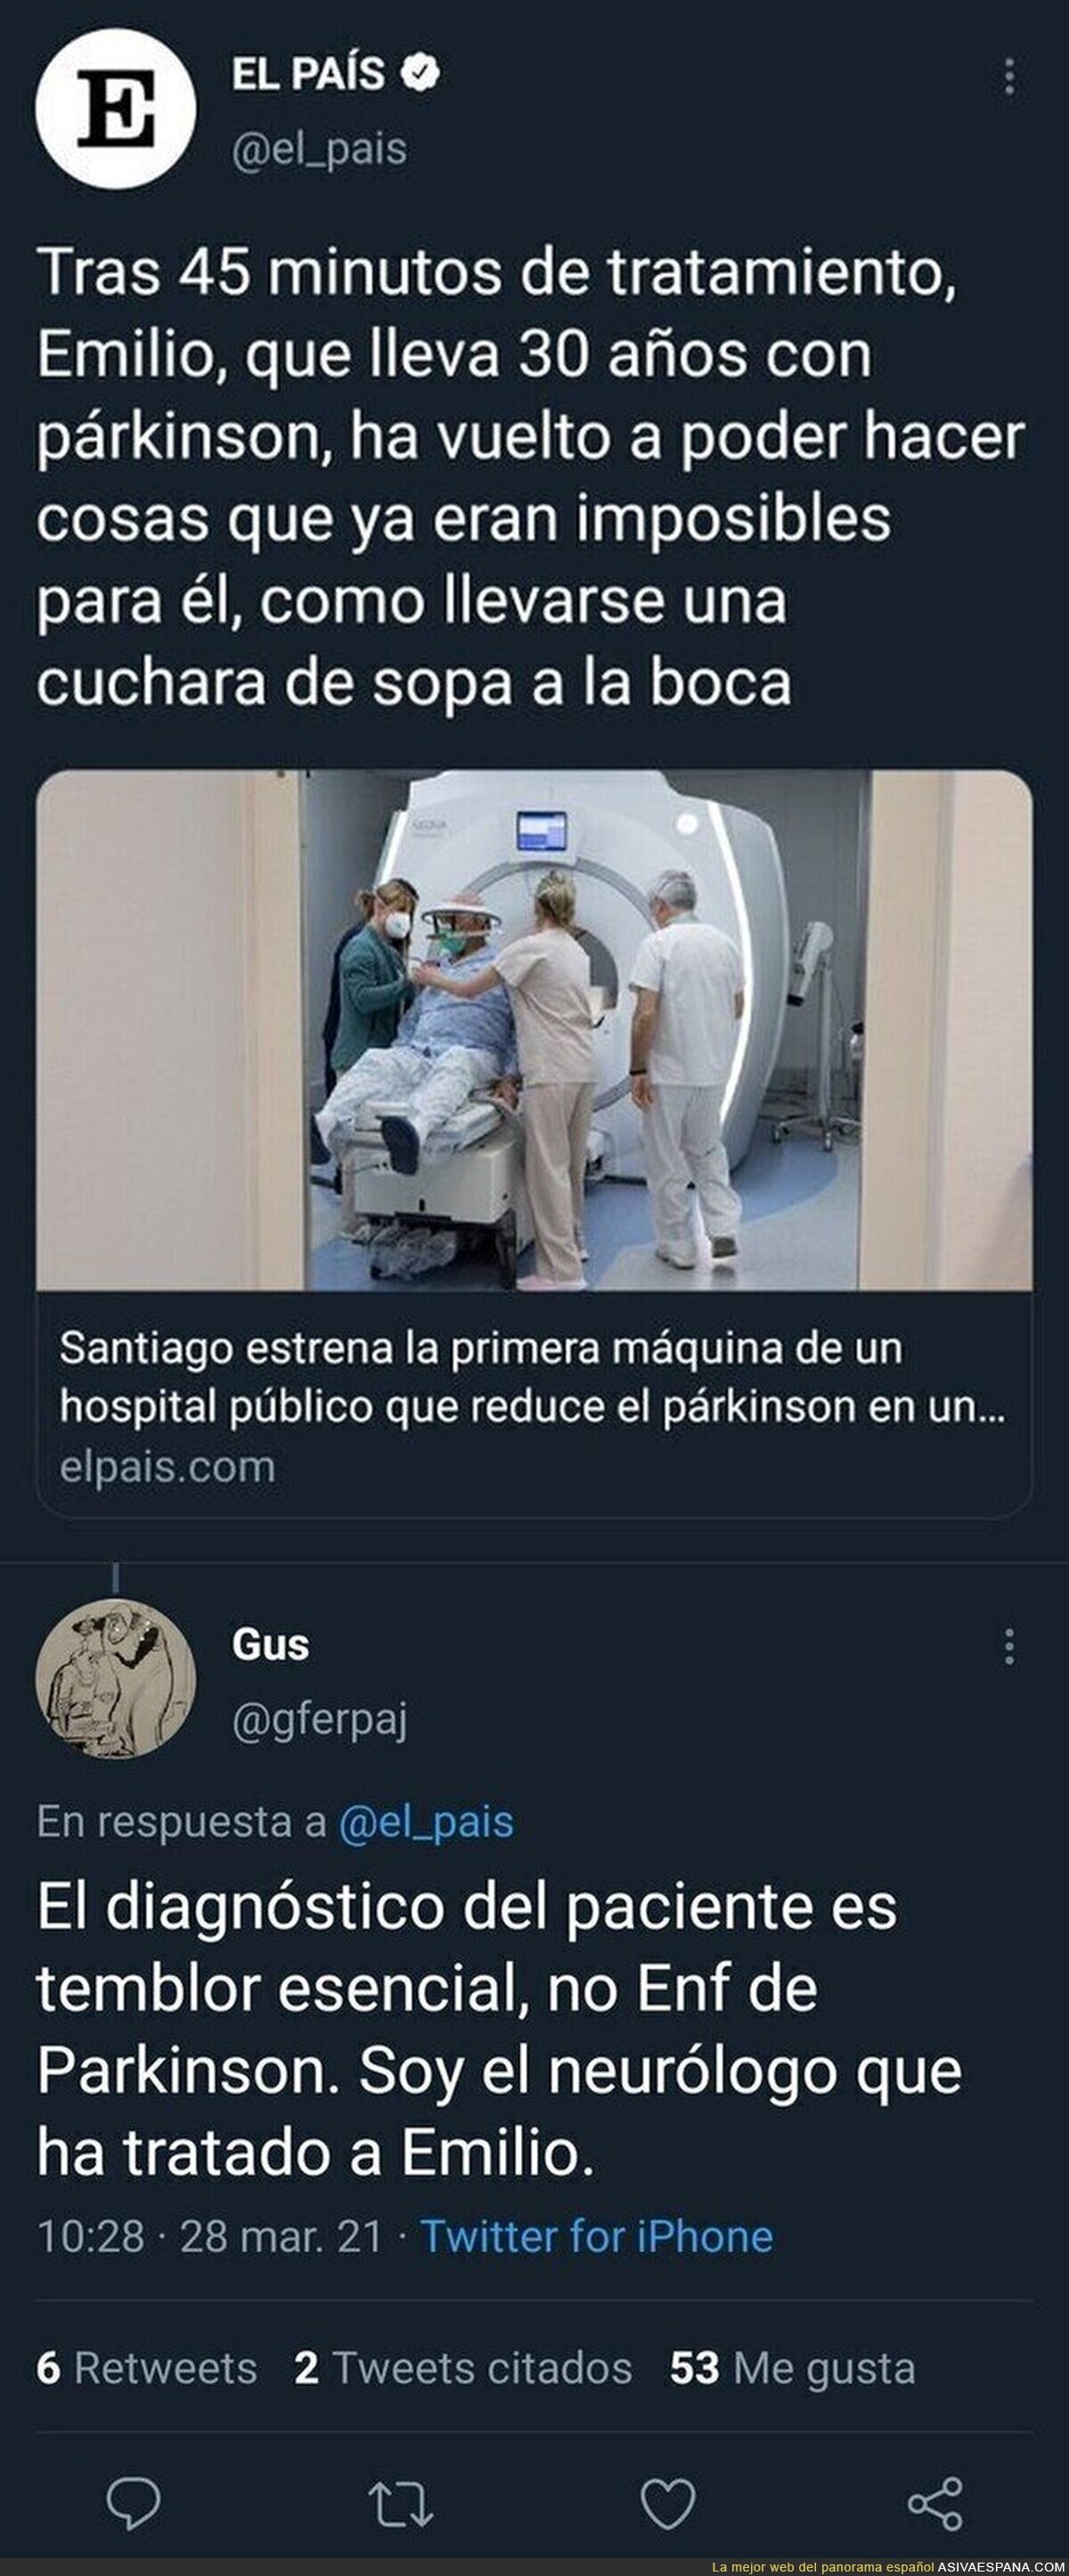 'El País' haciendo de las suyas